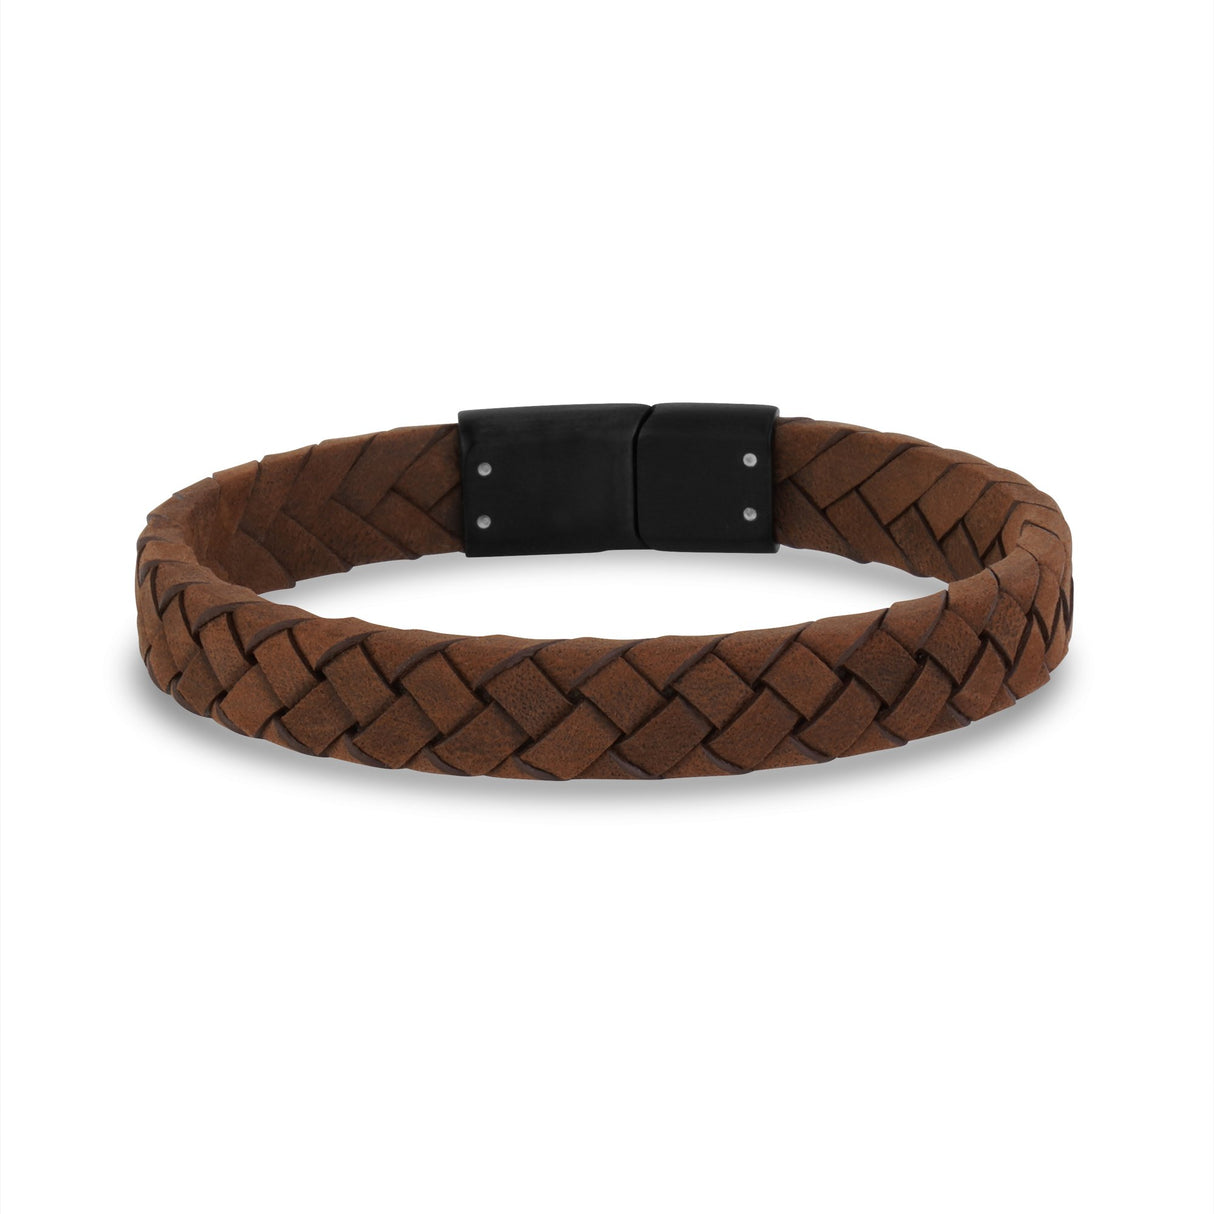 https://www.thesteelshop.com/cdn/shop/products/mens-steel-leather-bracelets-10mm-flat-italian-leather-engravable-bracelet-3.jpg?v=1621607606&width=1214